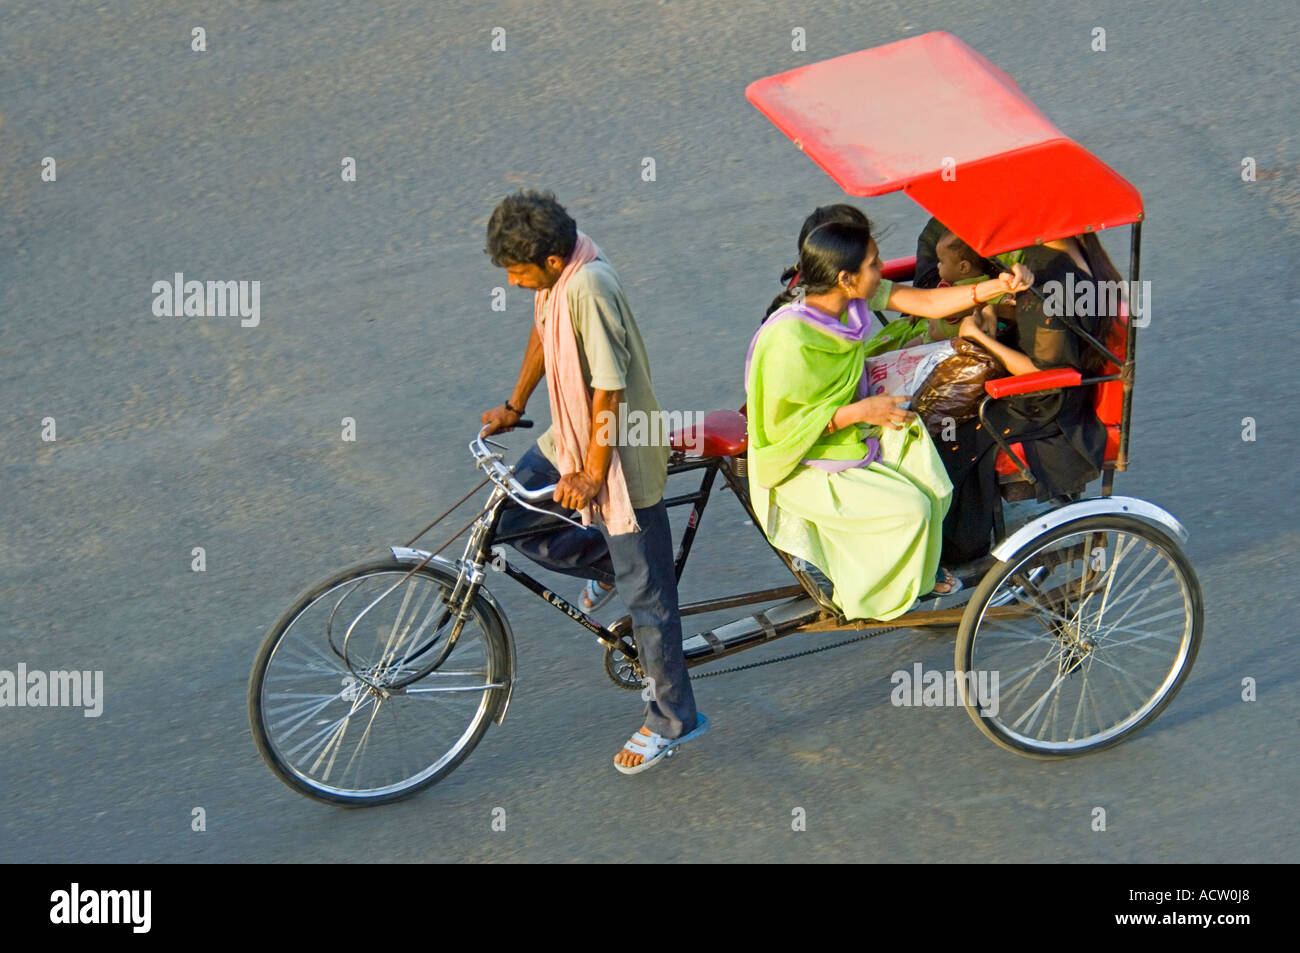 Une vue aérienne d'un cycle rickshaw qui circulaient sur la route avec des passagers indiens. Banque D'Images